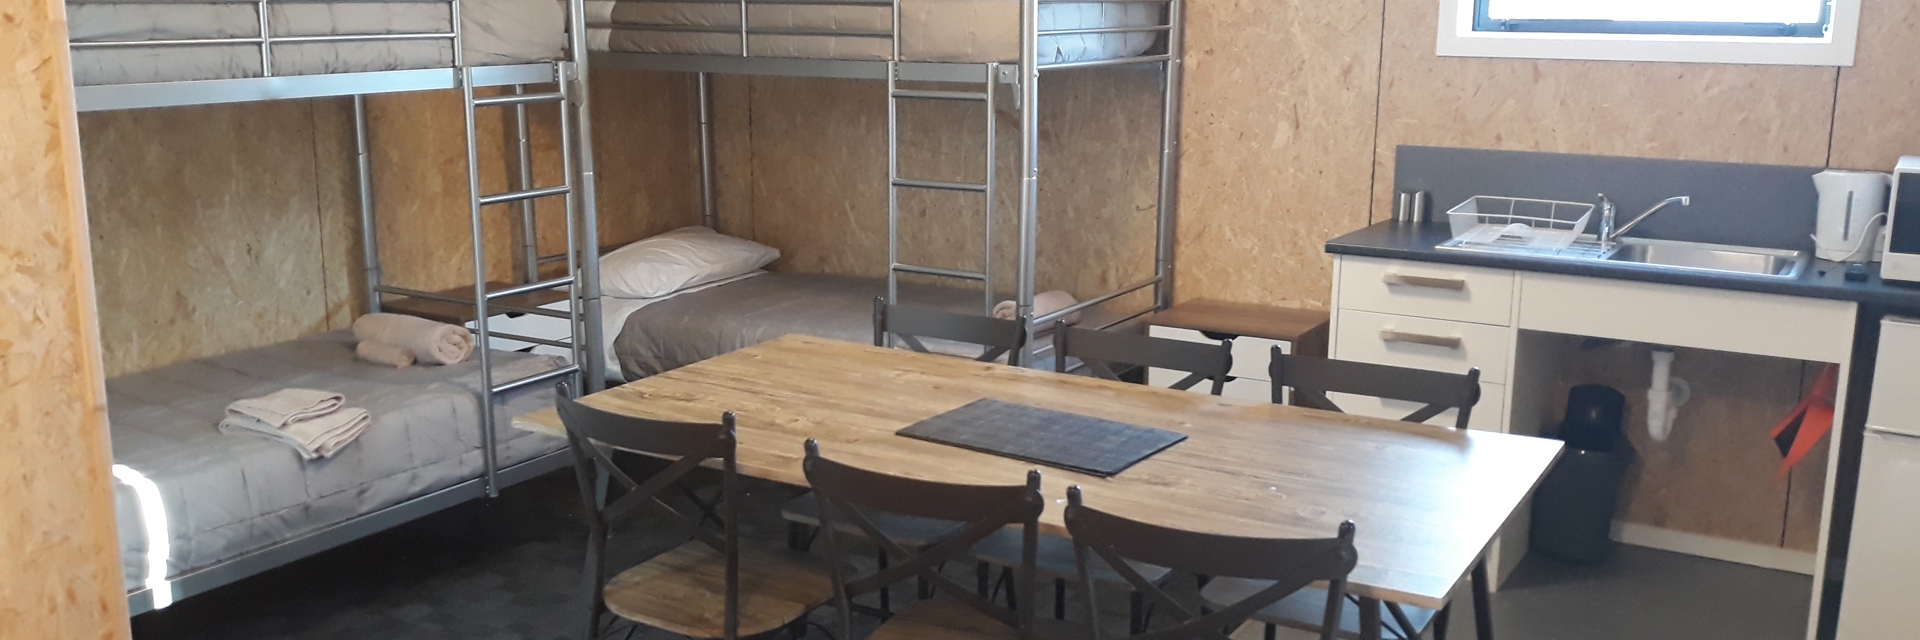 Bunk beds in studio unit